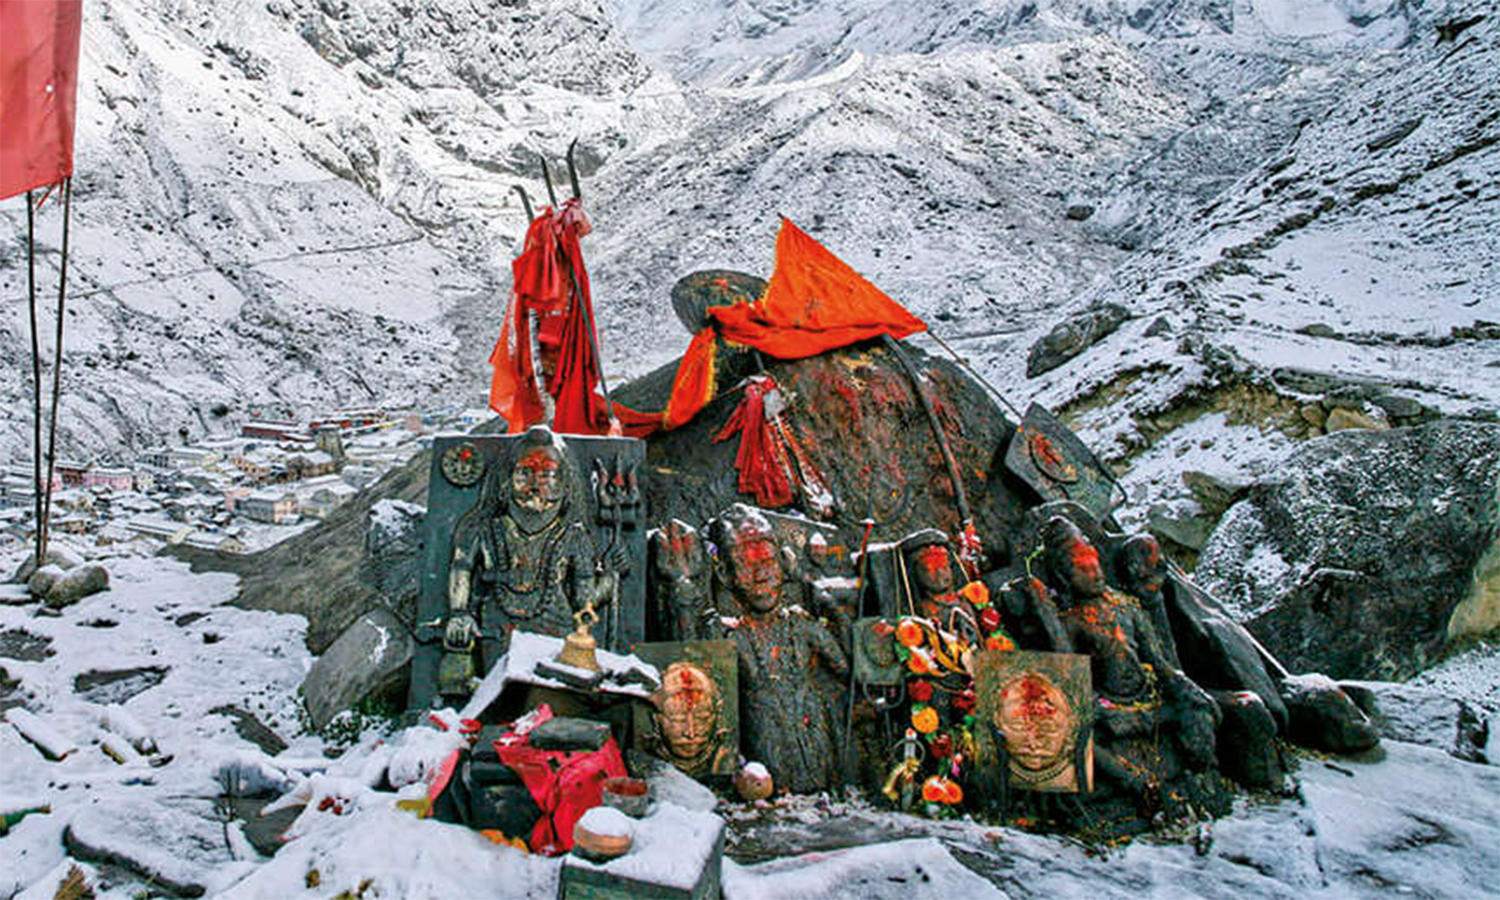 500 மீட்டர் உயர மலை உச்சியில் உள்ளது புகுர்ந்த் பைரவர் கோவில்- கேதார்நாத்